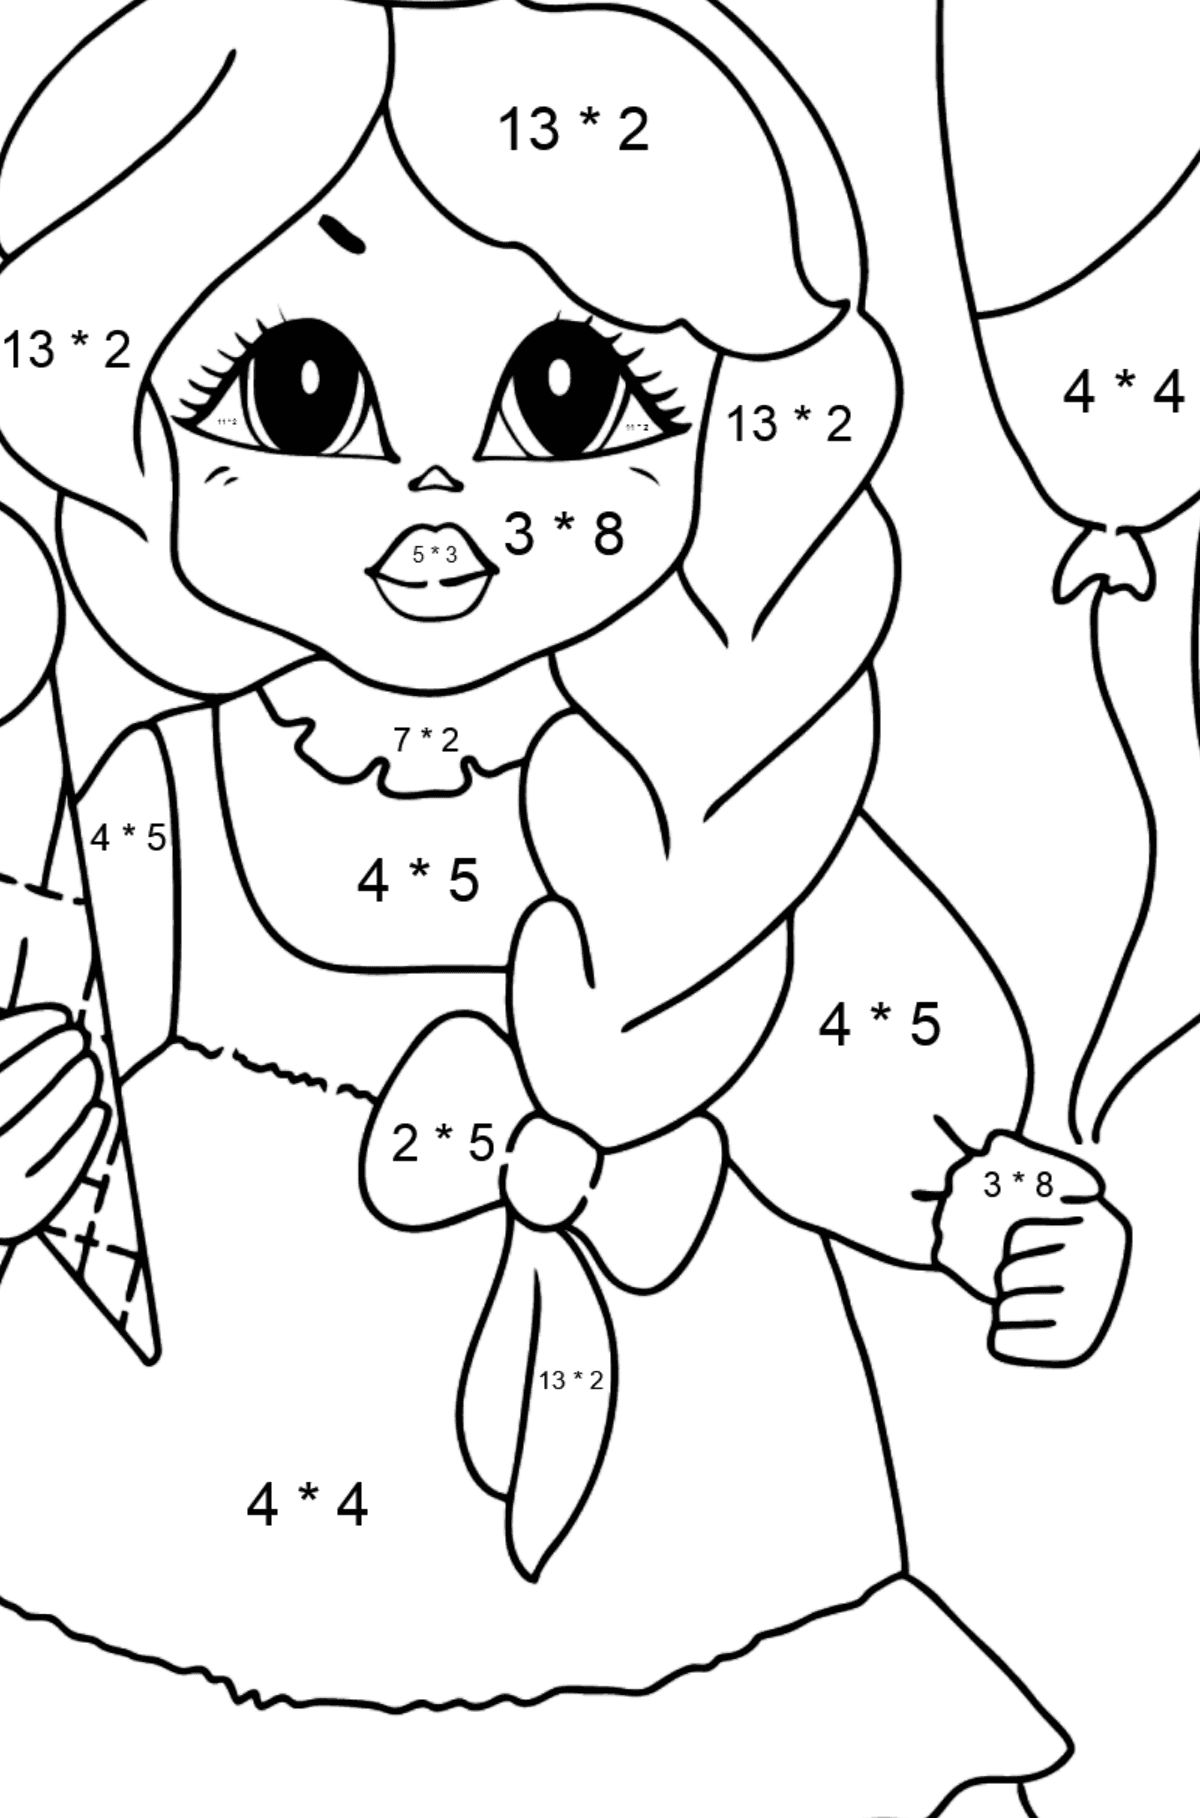 Ausmalbild - Eine Prinzessin mit Eiscreme - Mathe Ausmalbilder - Multiplikation für Kinder